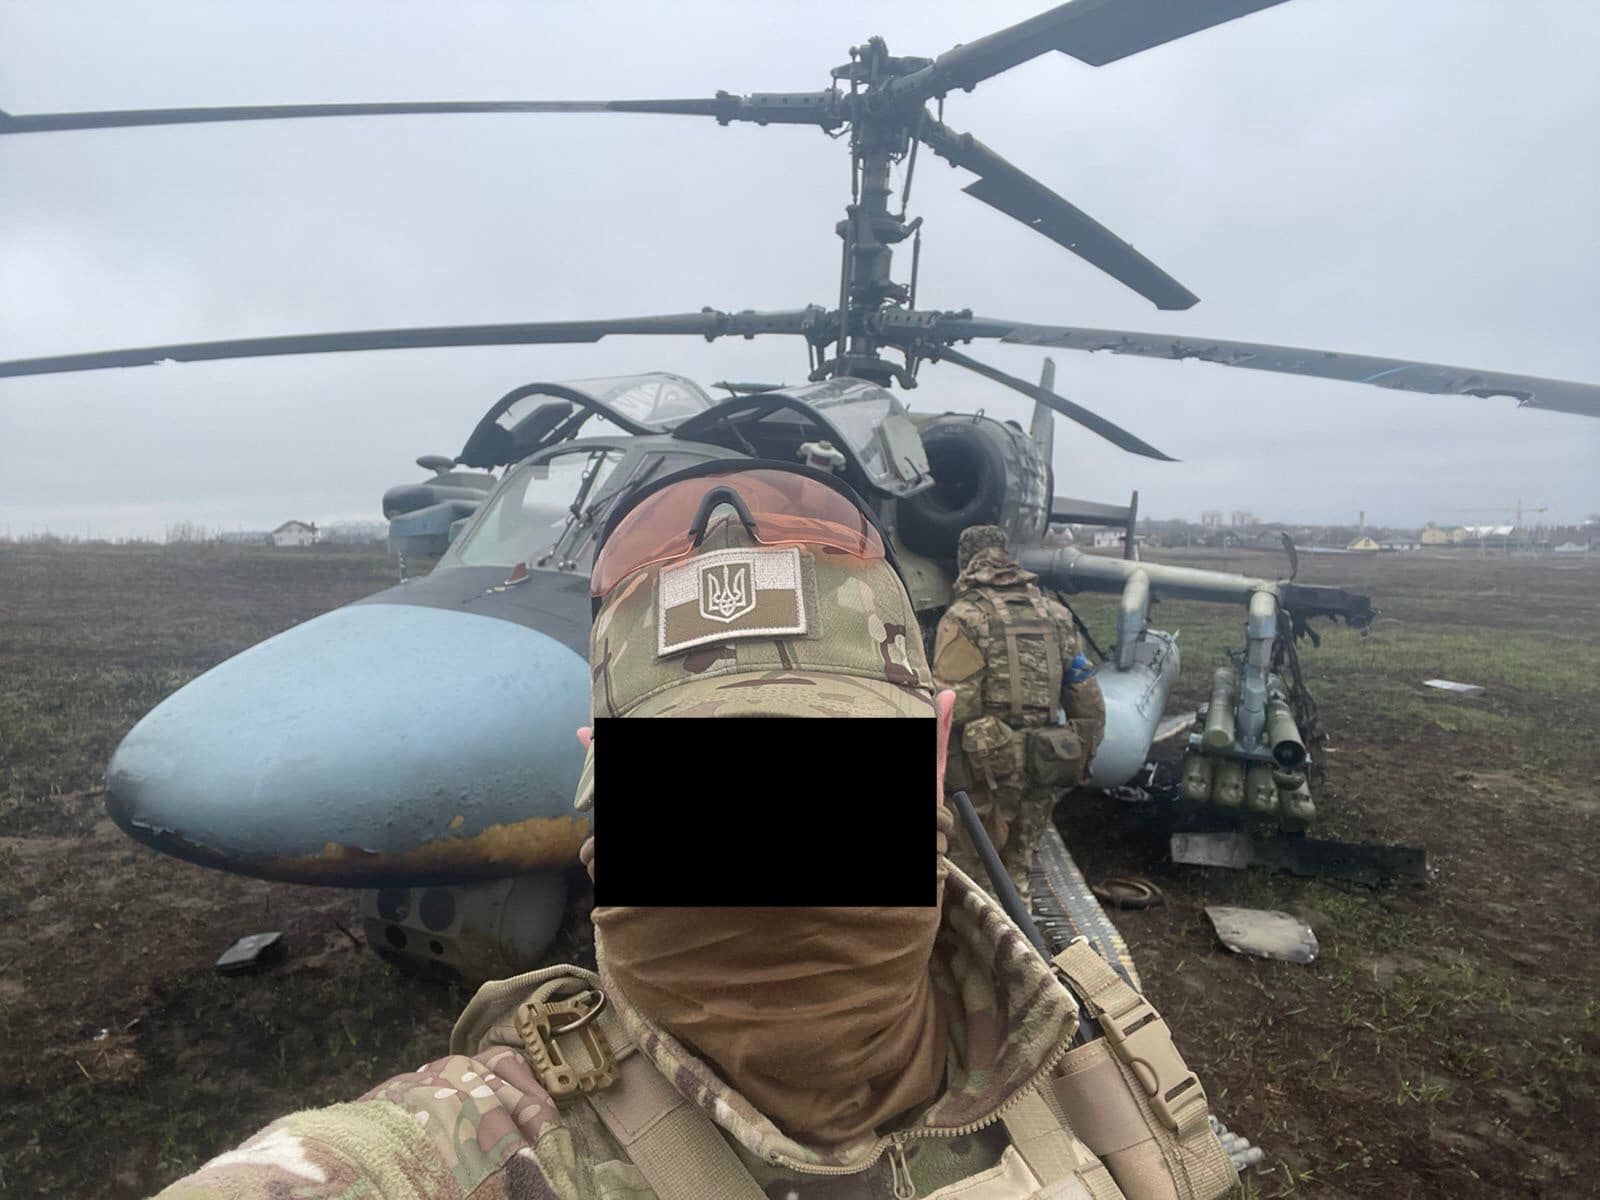 Украинские спецназовцы "аккуратно приземлили" вражеский Ка-52